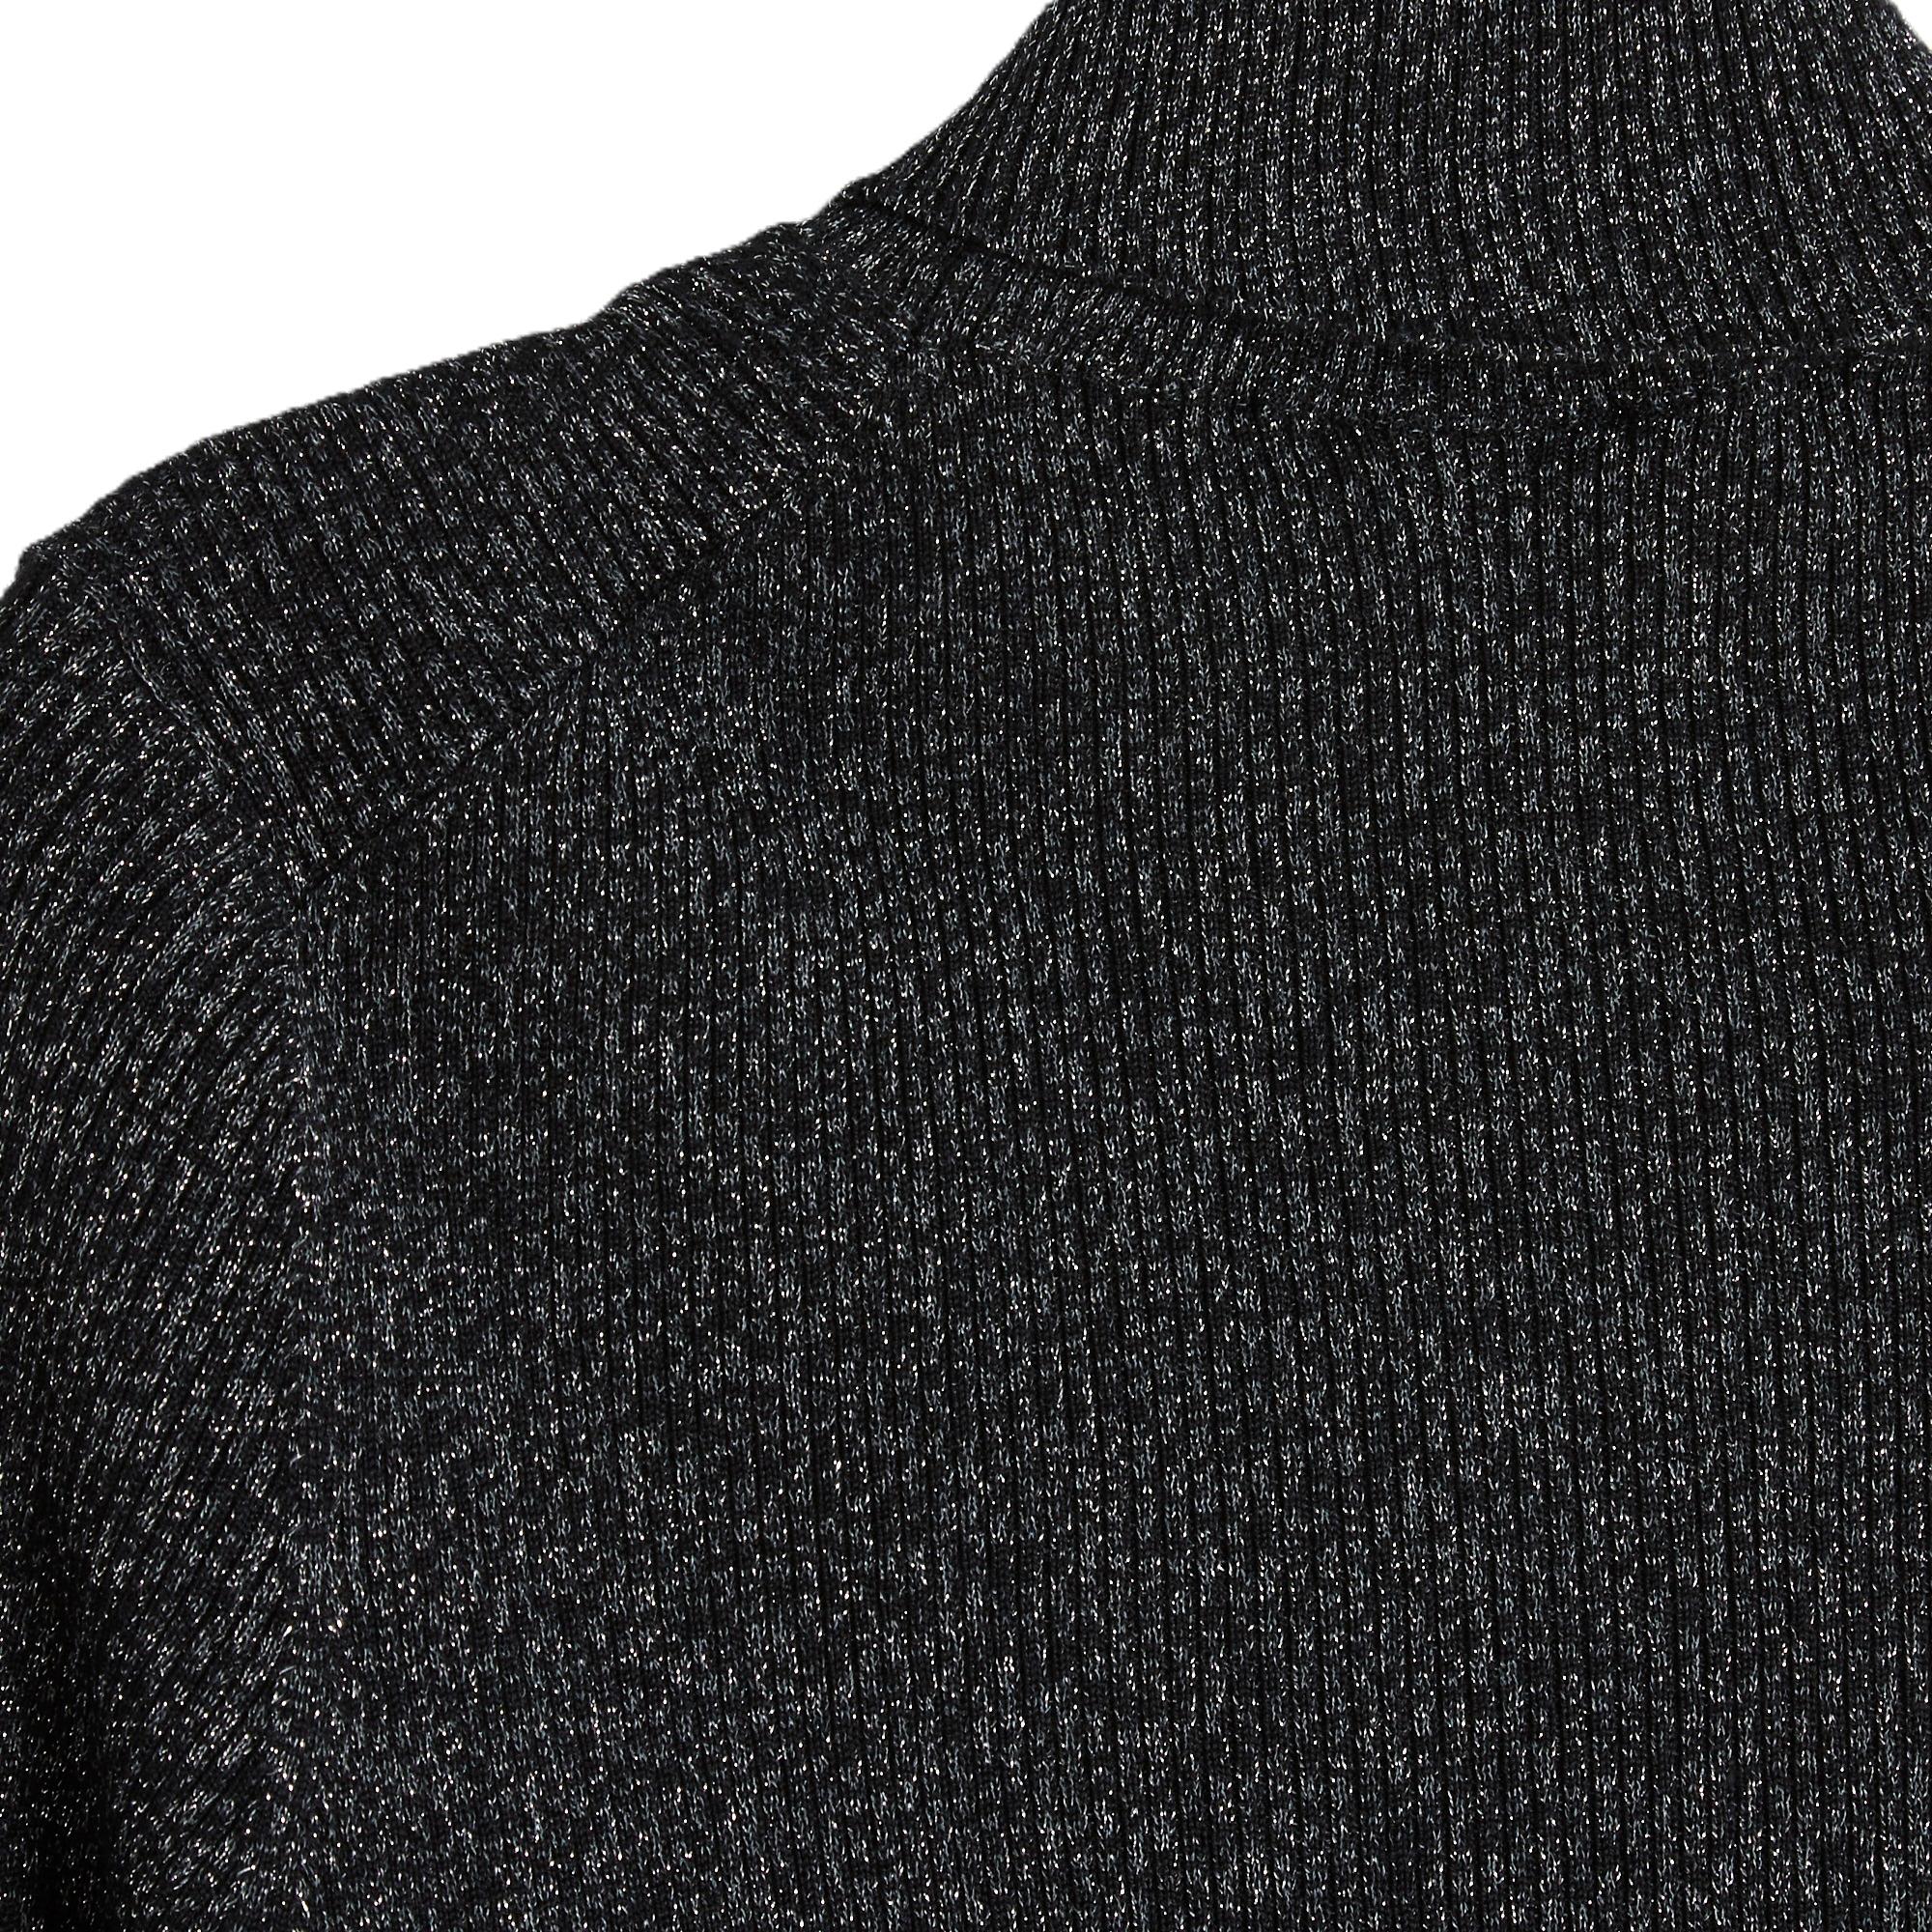 Prada Pullover im Sockenstich aus schwarz und silber melierter Metallic-Wolle und Seidengarn, Rollkragen, lange Ärmel. Größe 44IT oder 40FR (Maße ohne Dehnung des Netzes): Mitte 33 cm, Brust 35 cm, Länge 69 cm, Ärmel 61 cm. Der Pullover ist in